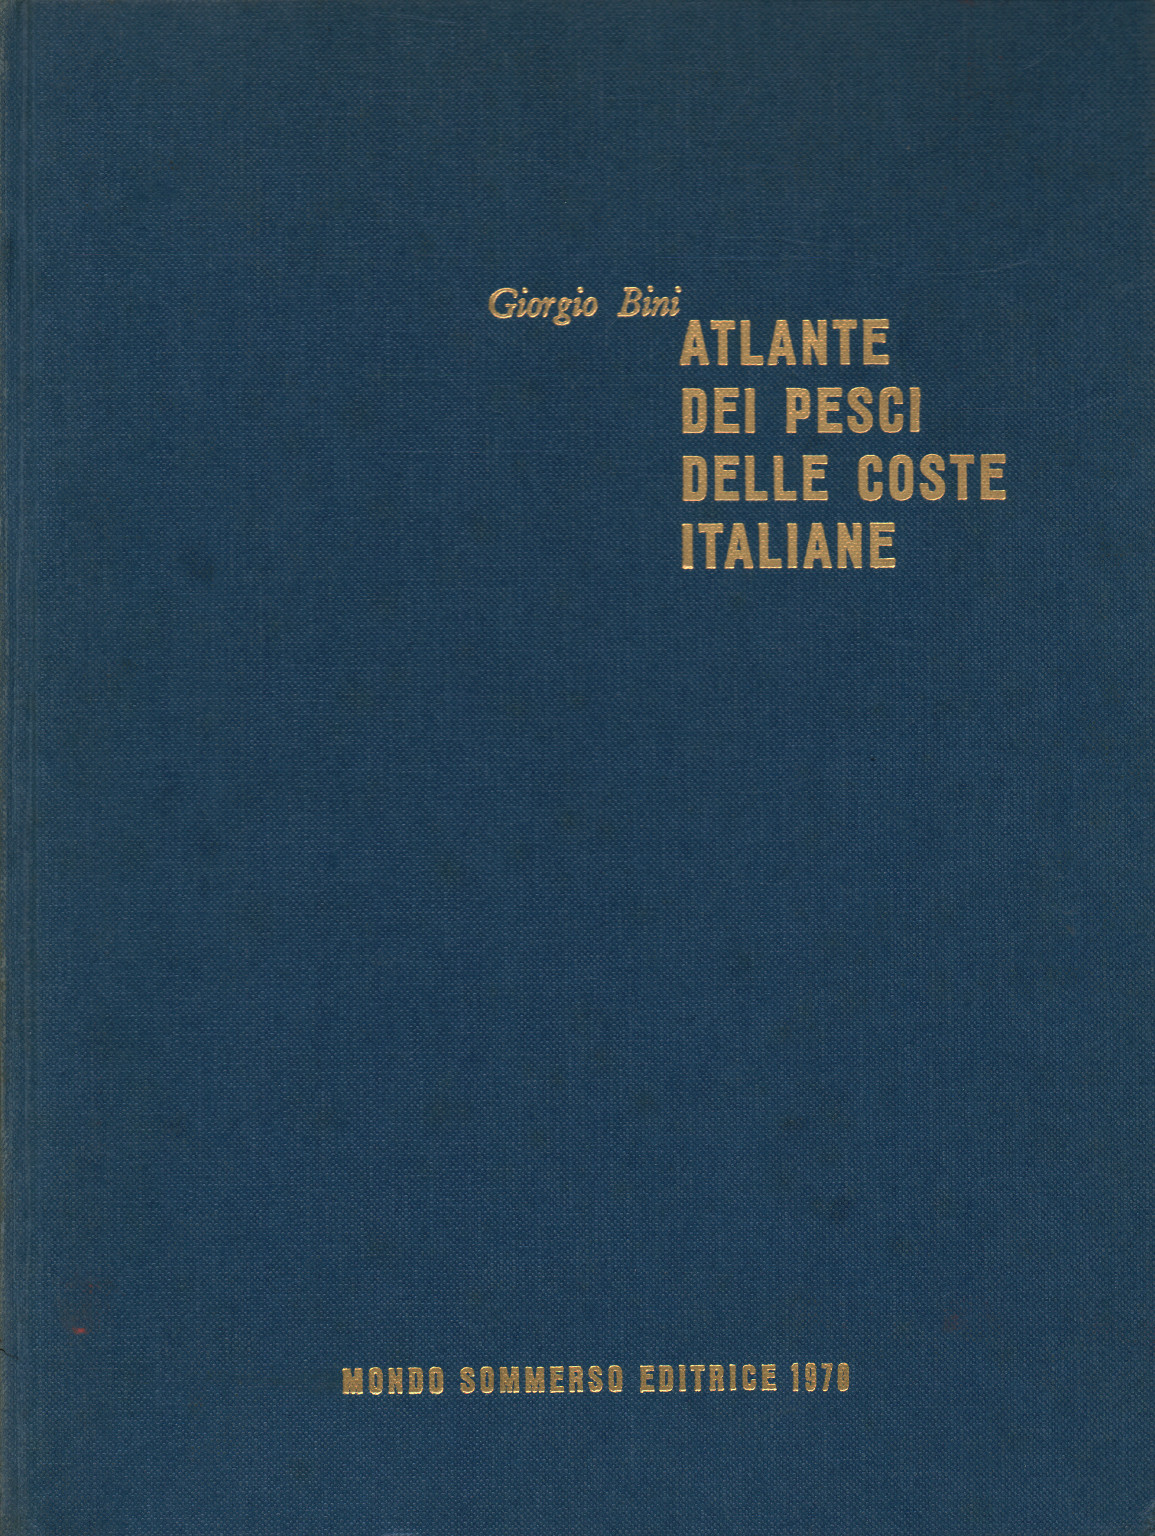 Atlas der fische von den küsten italiens, Volume III, Giorgio Bini